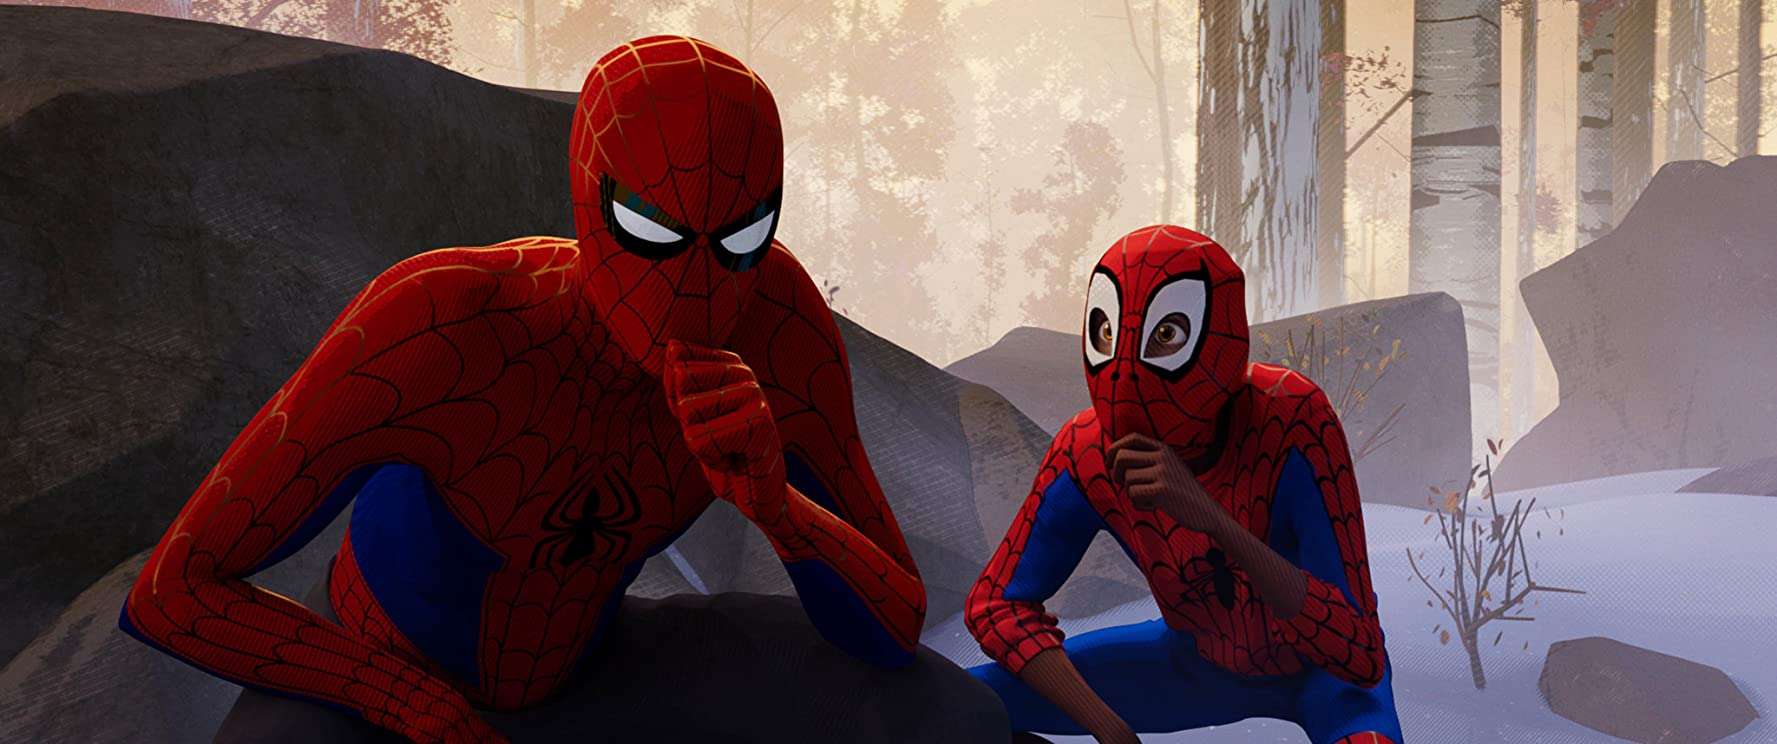 Spider-Man-Into-The-Spider-Verse-2018